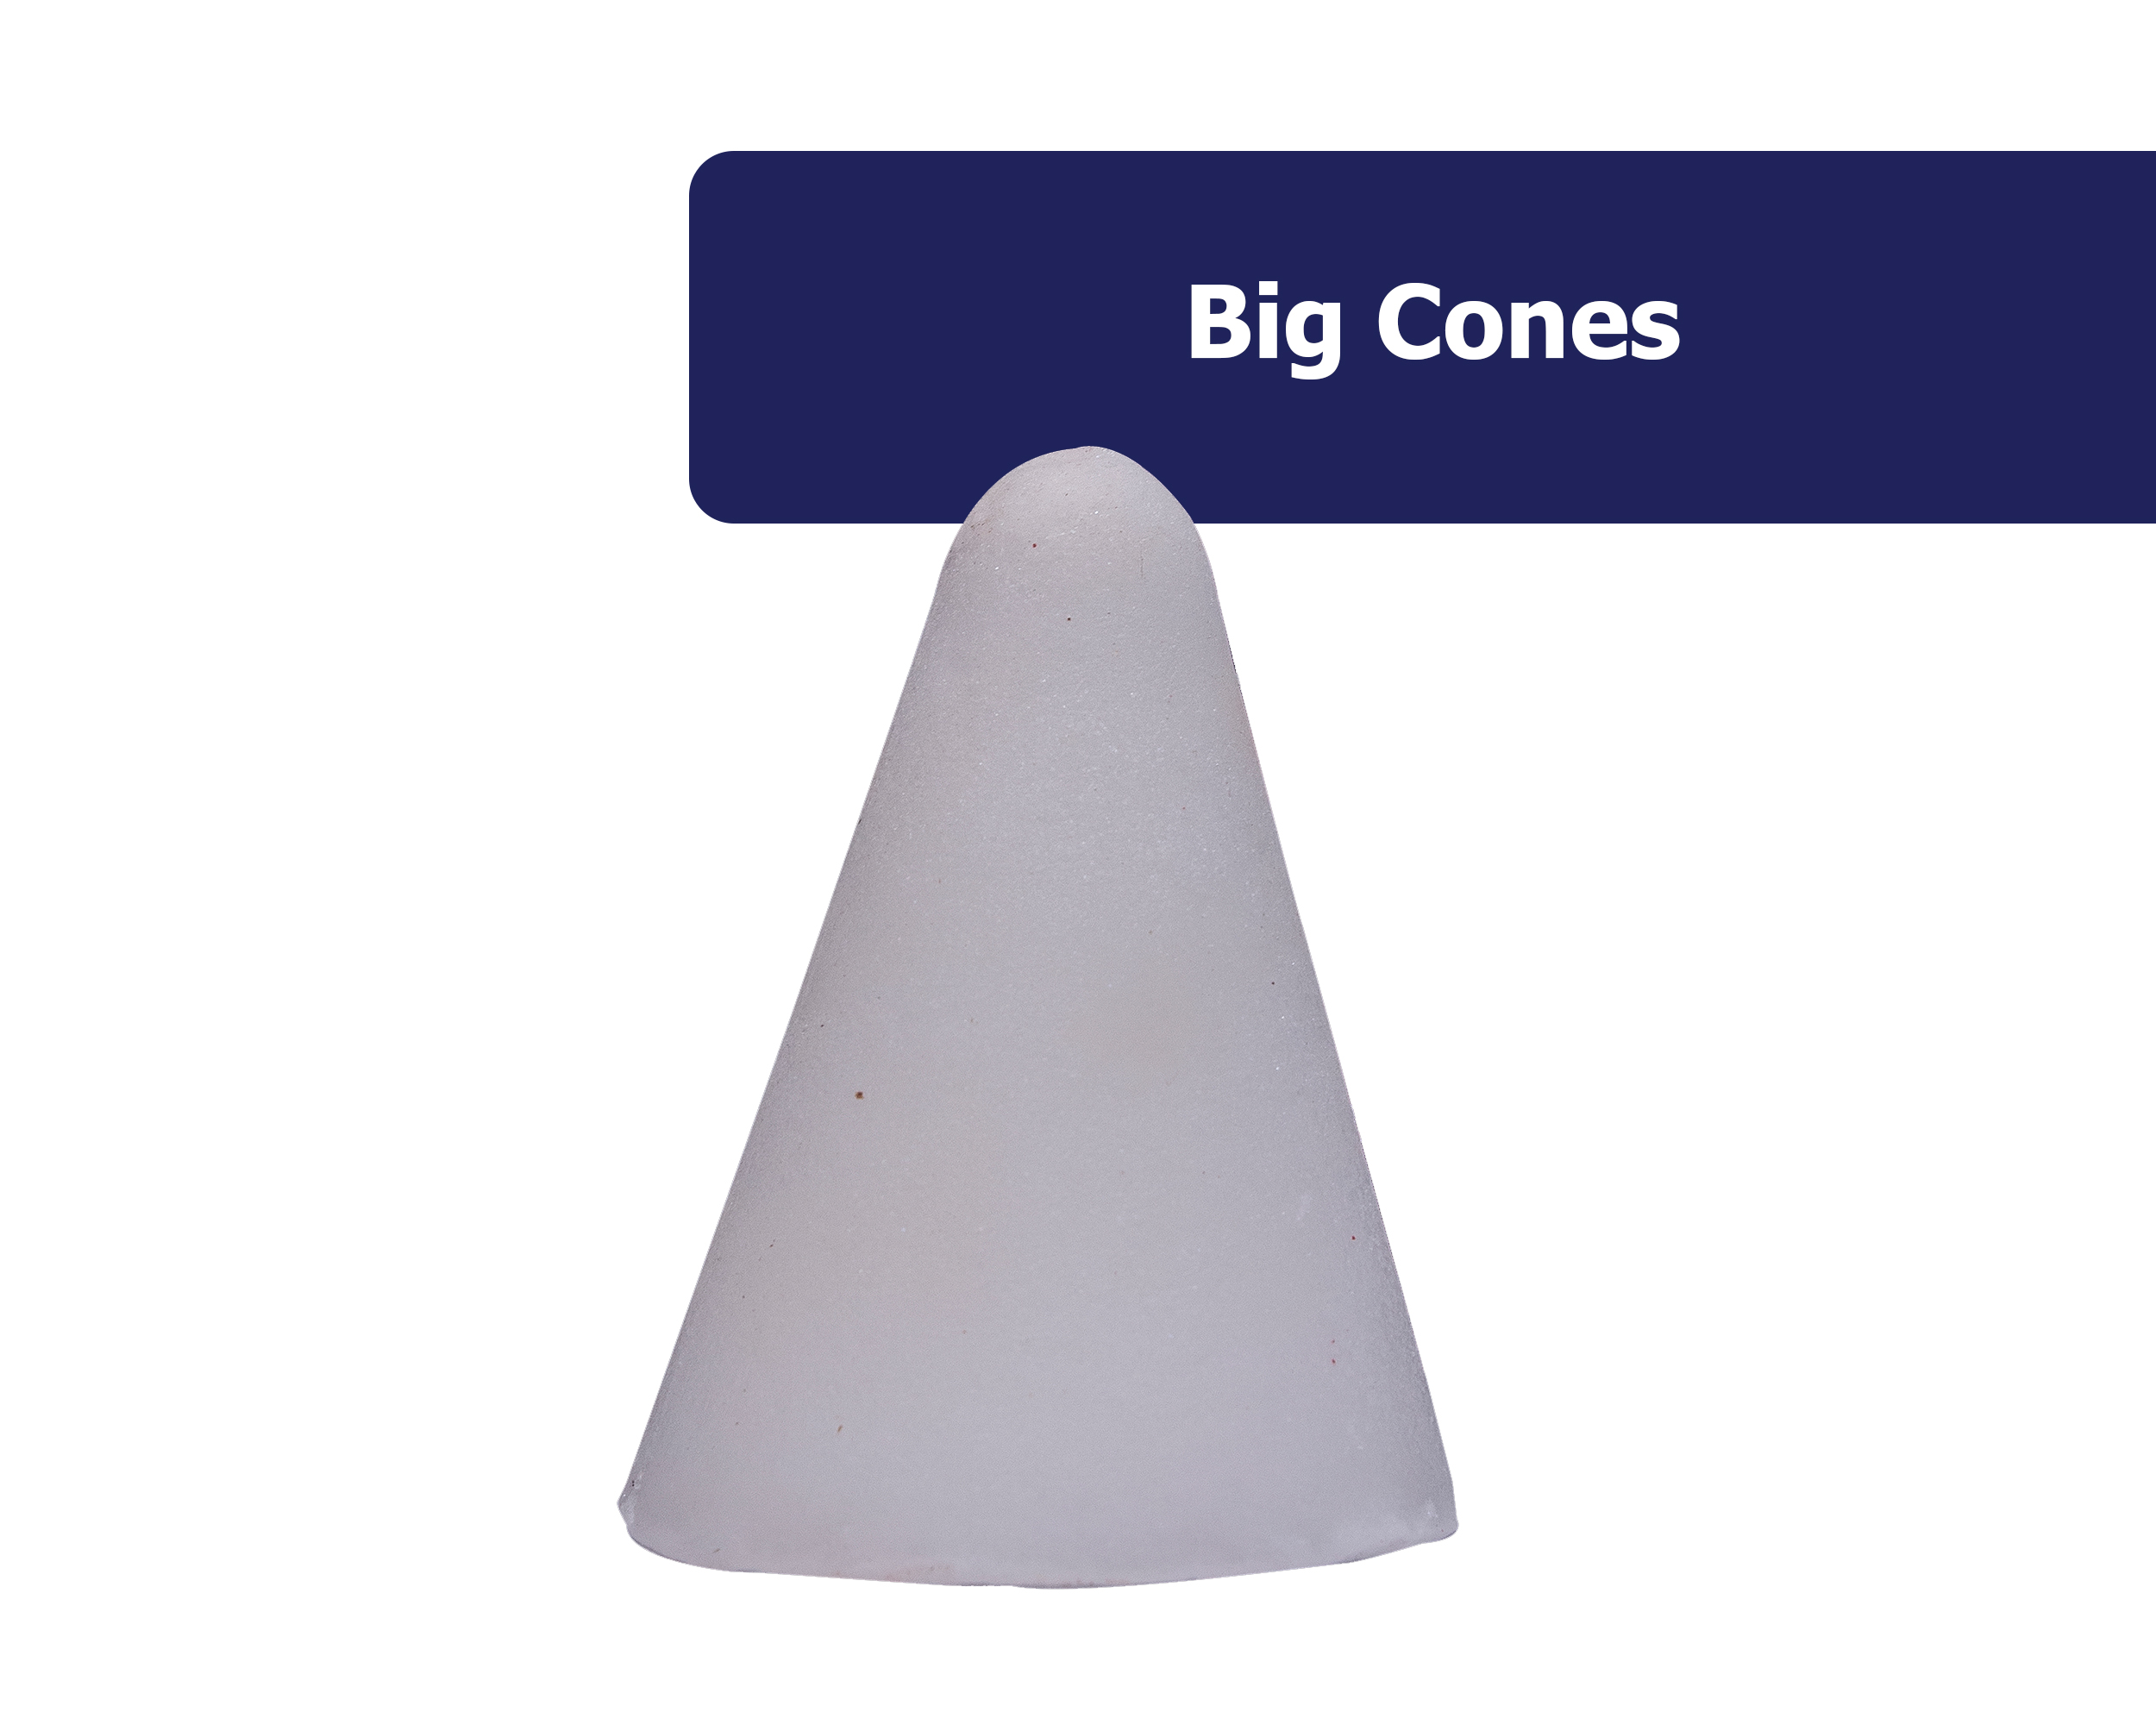 Camphor Cones